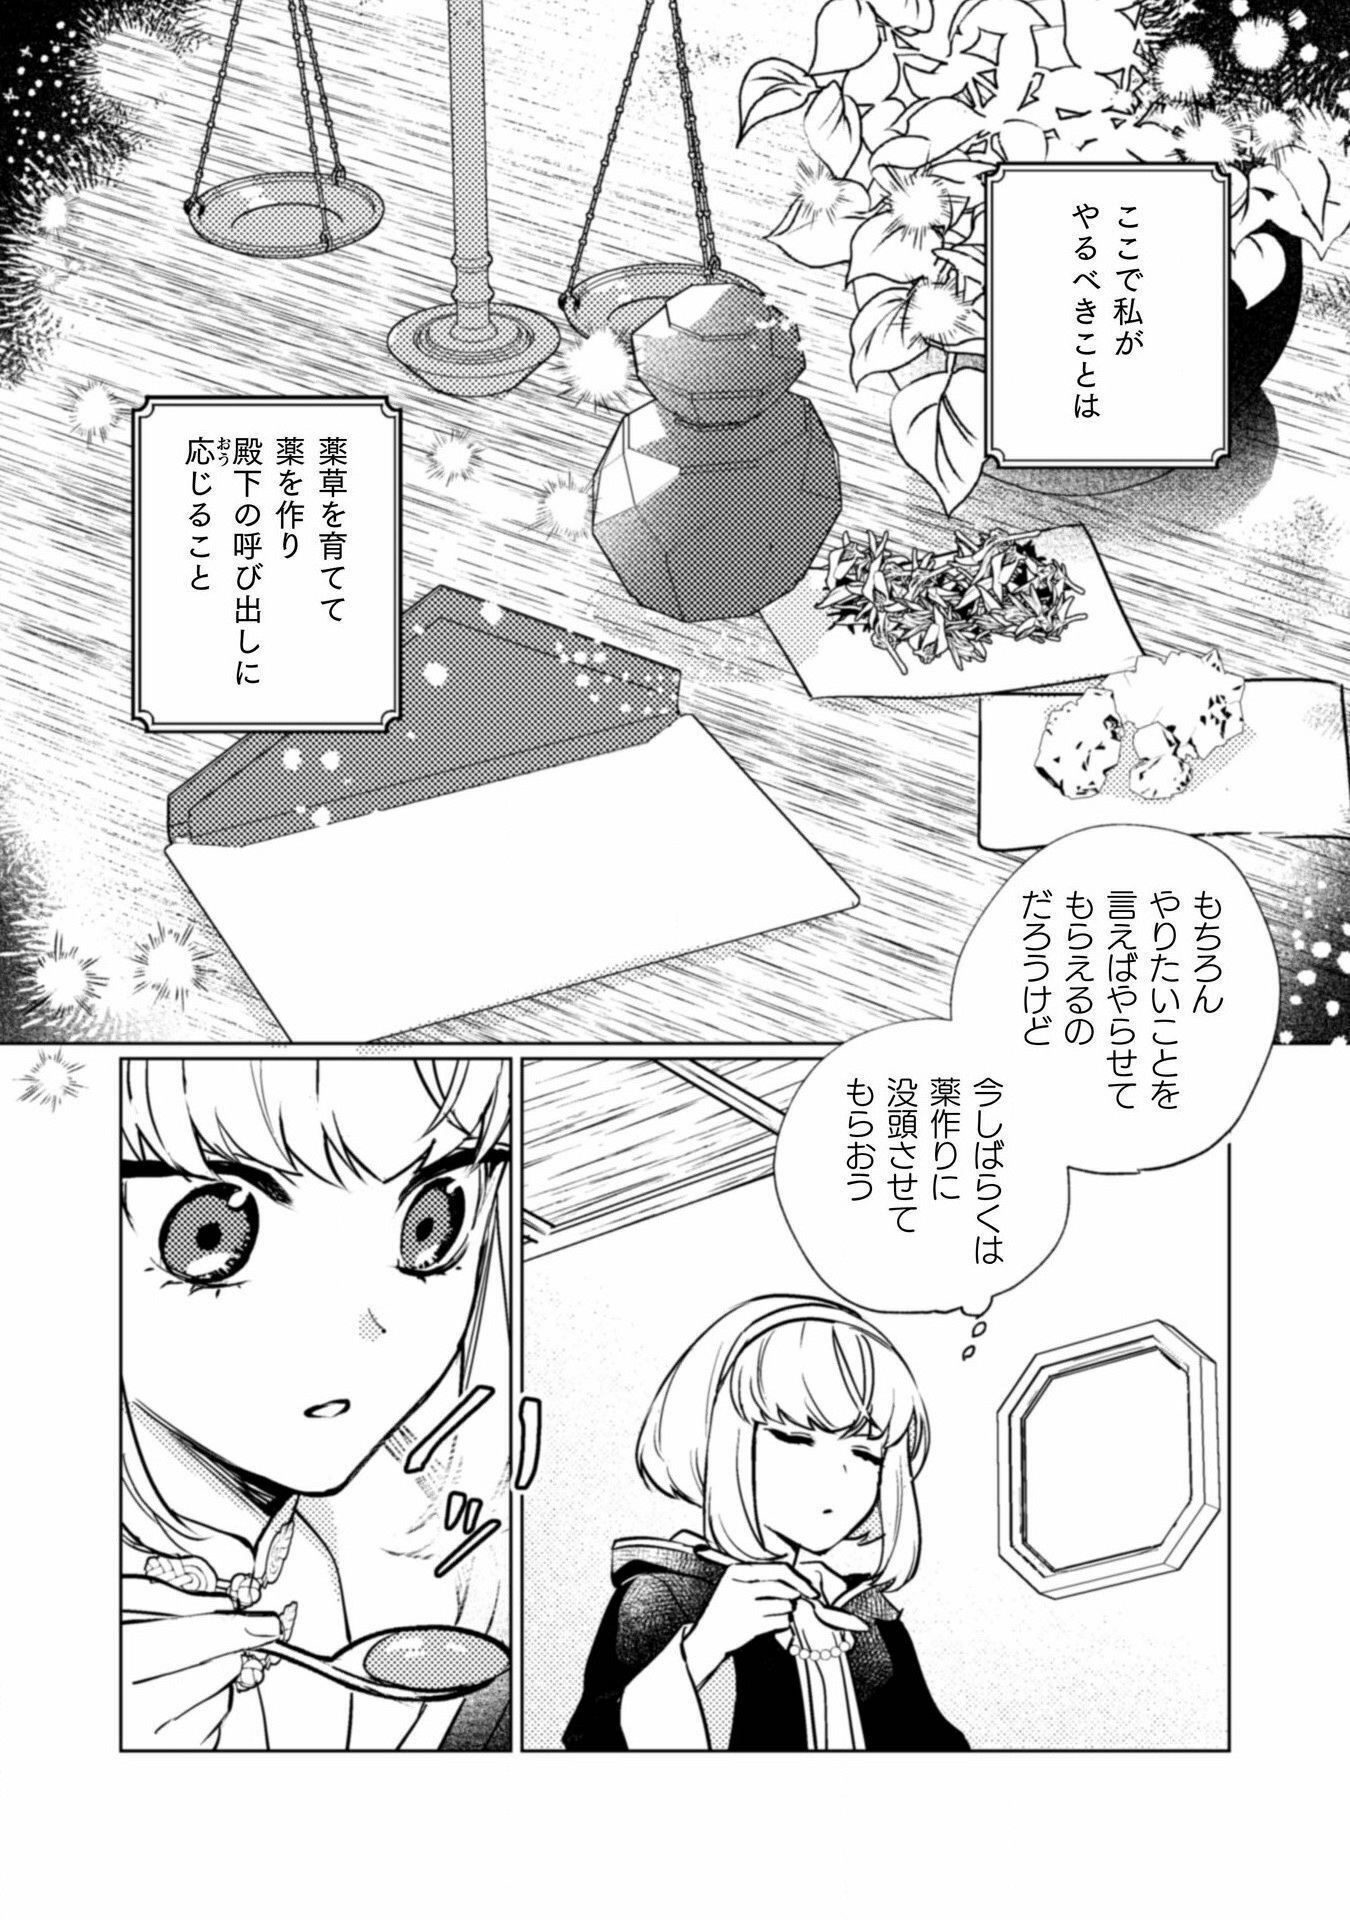 Uranaishi ni wa Hana Kishi no Koigokoro ga Mieteimasu - Chapter 20 - Page 5